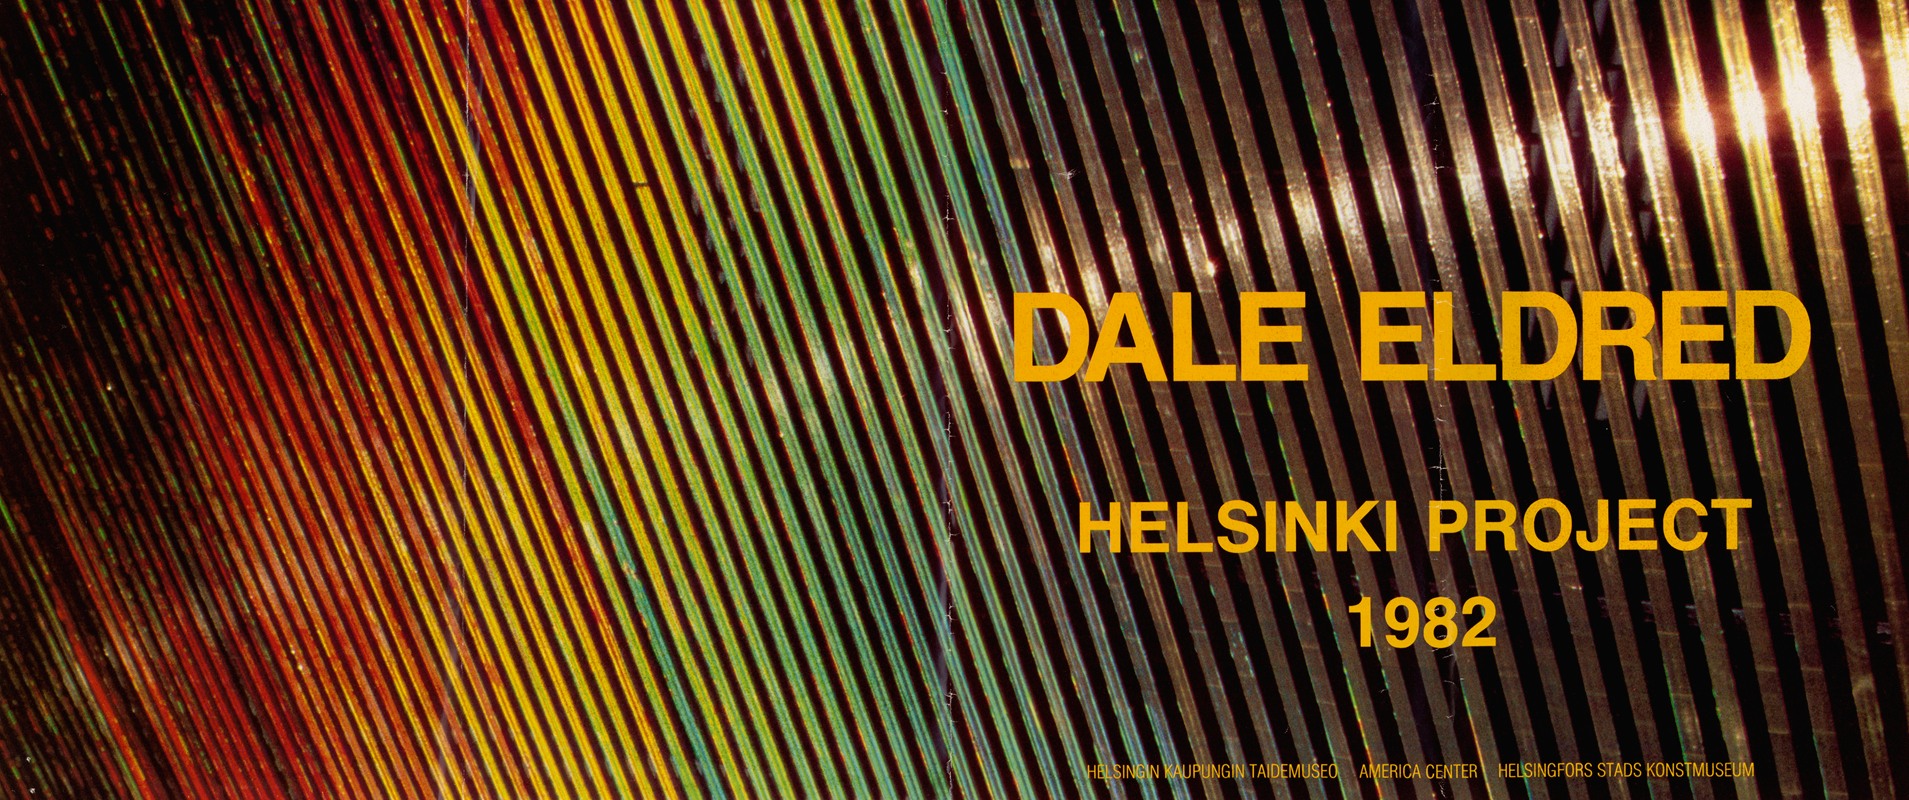 U.S. Information Agency - Dale Eldred: Helsinki Project 1982